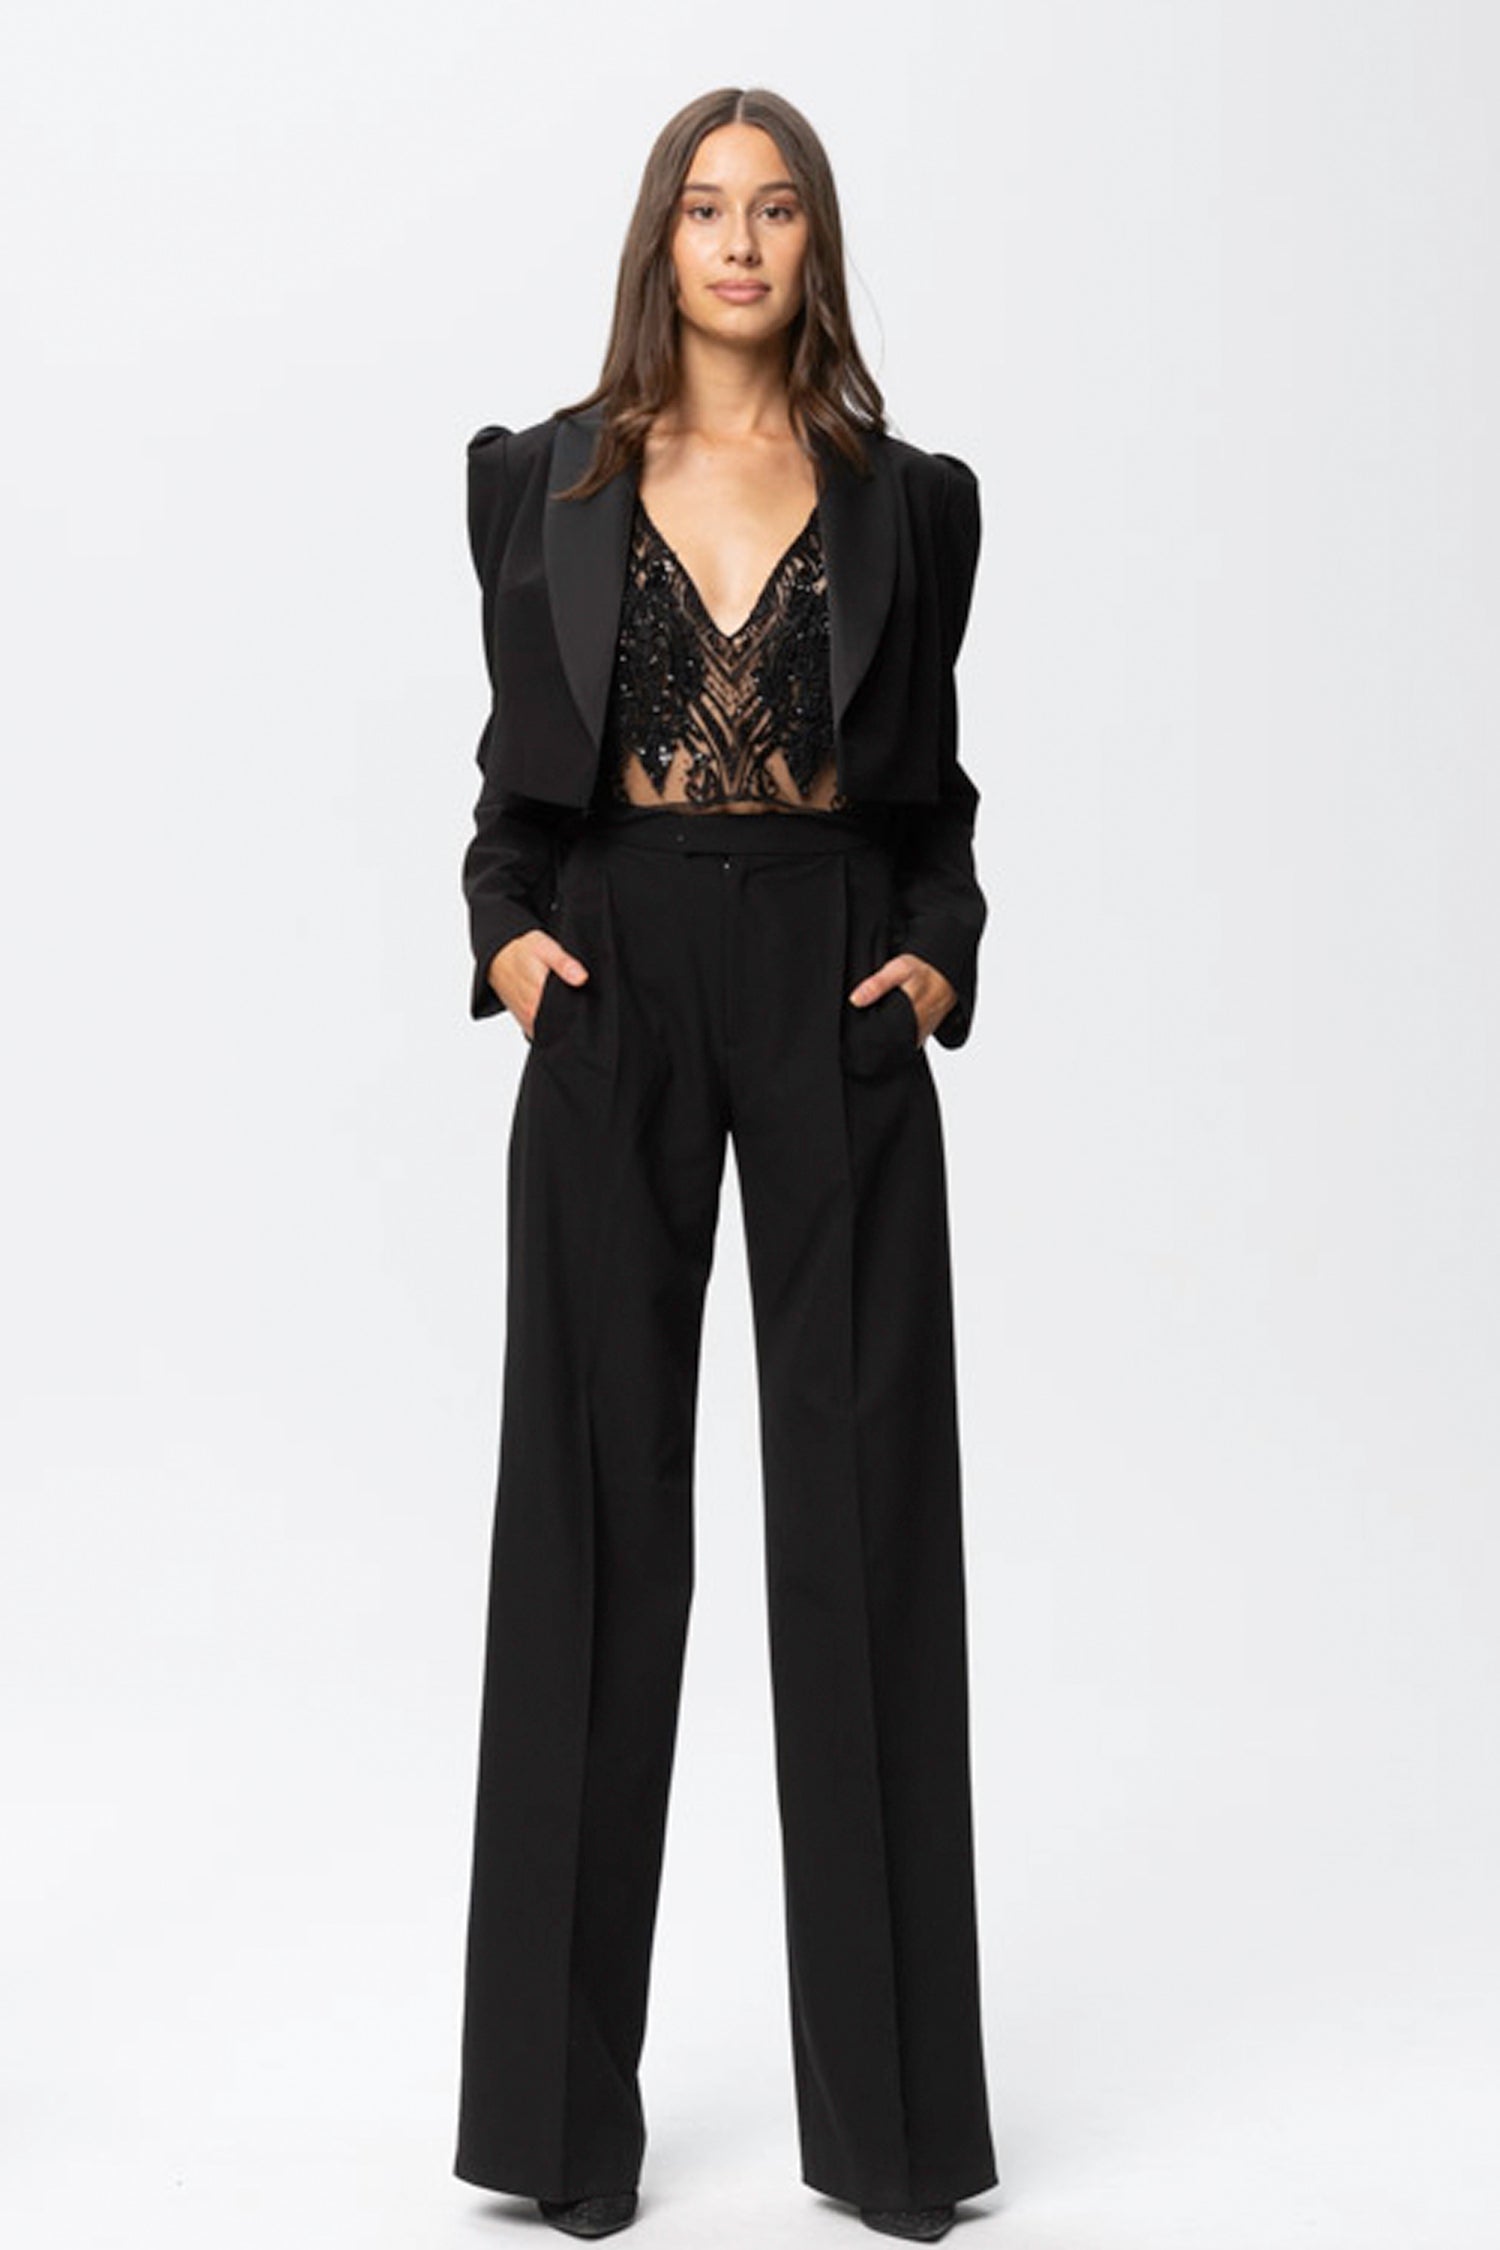 Sanremo High-rise Wide-leg Suit Pants Black